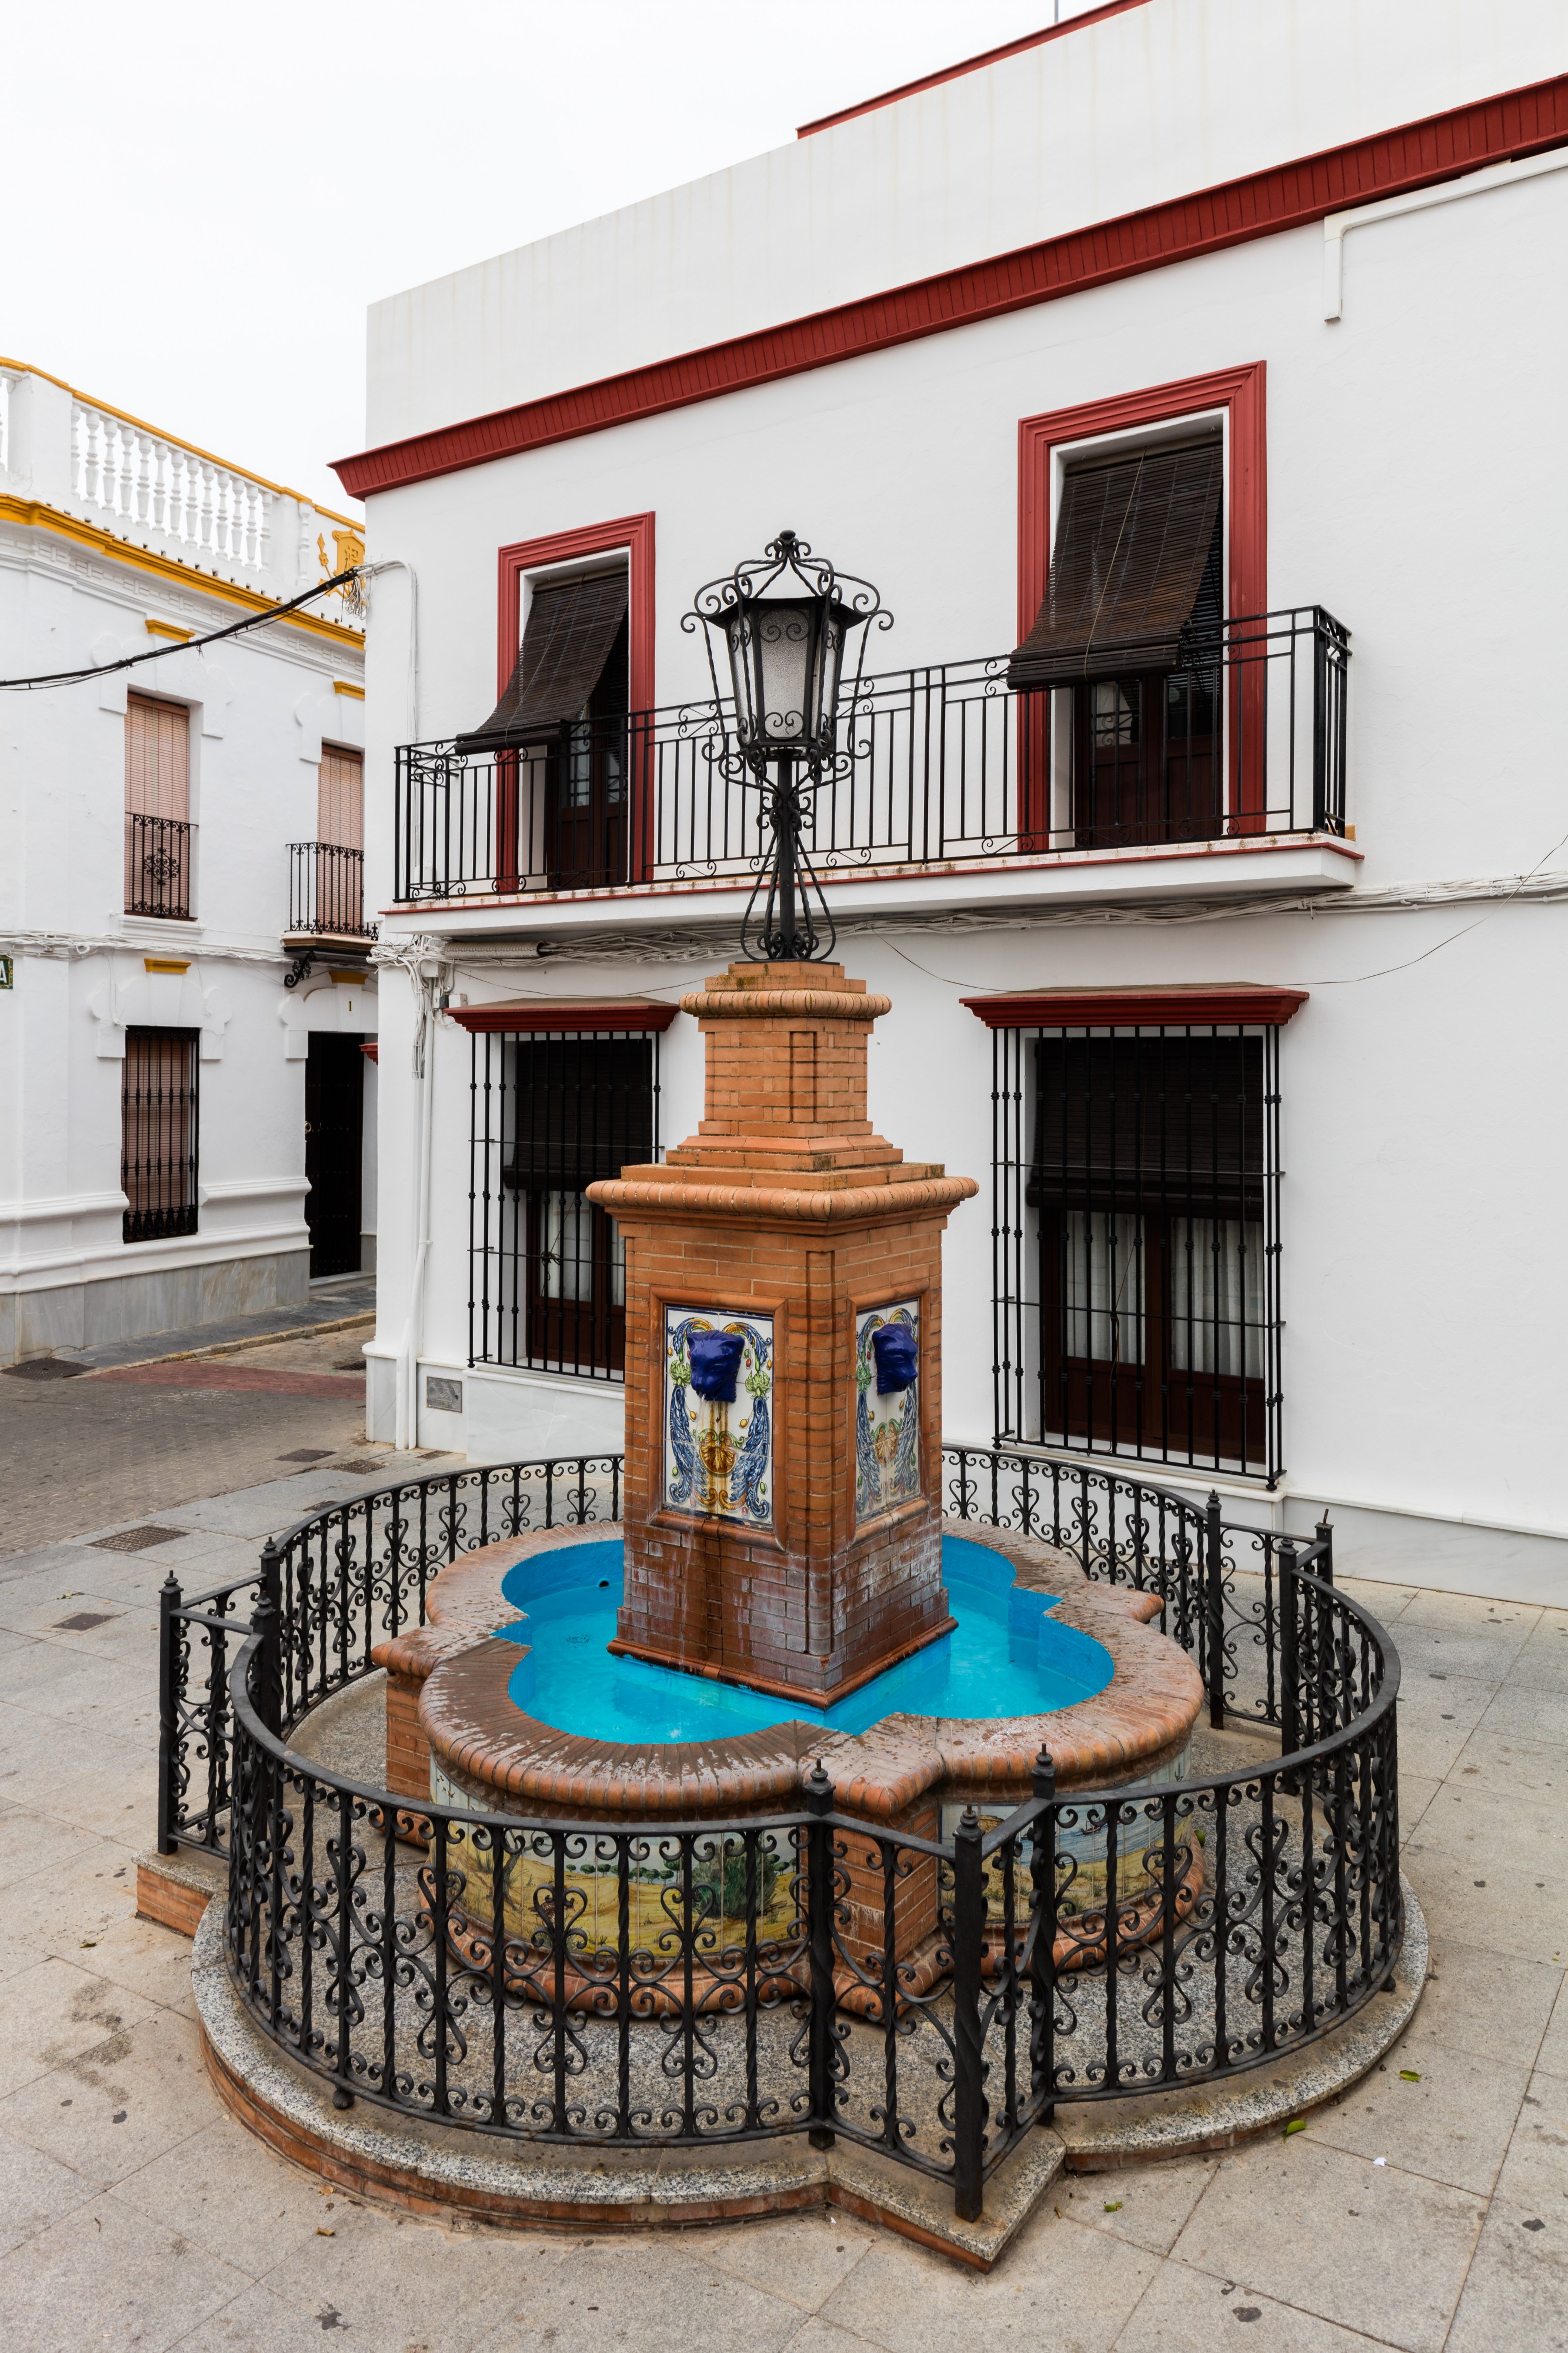 Fuente, Plaza Virgen del Rocío, Almonte, Huelva, España, 2015-12-07, DD 03